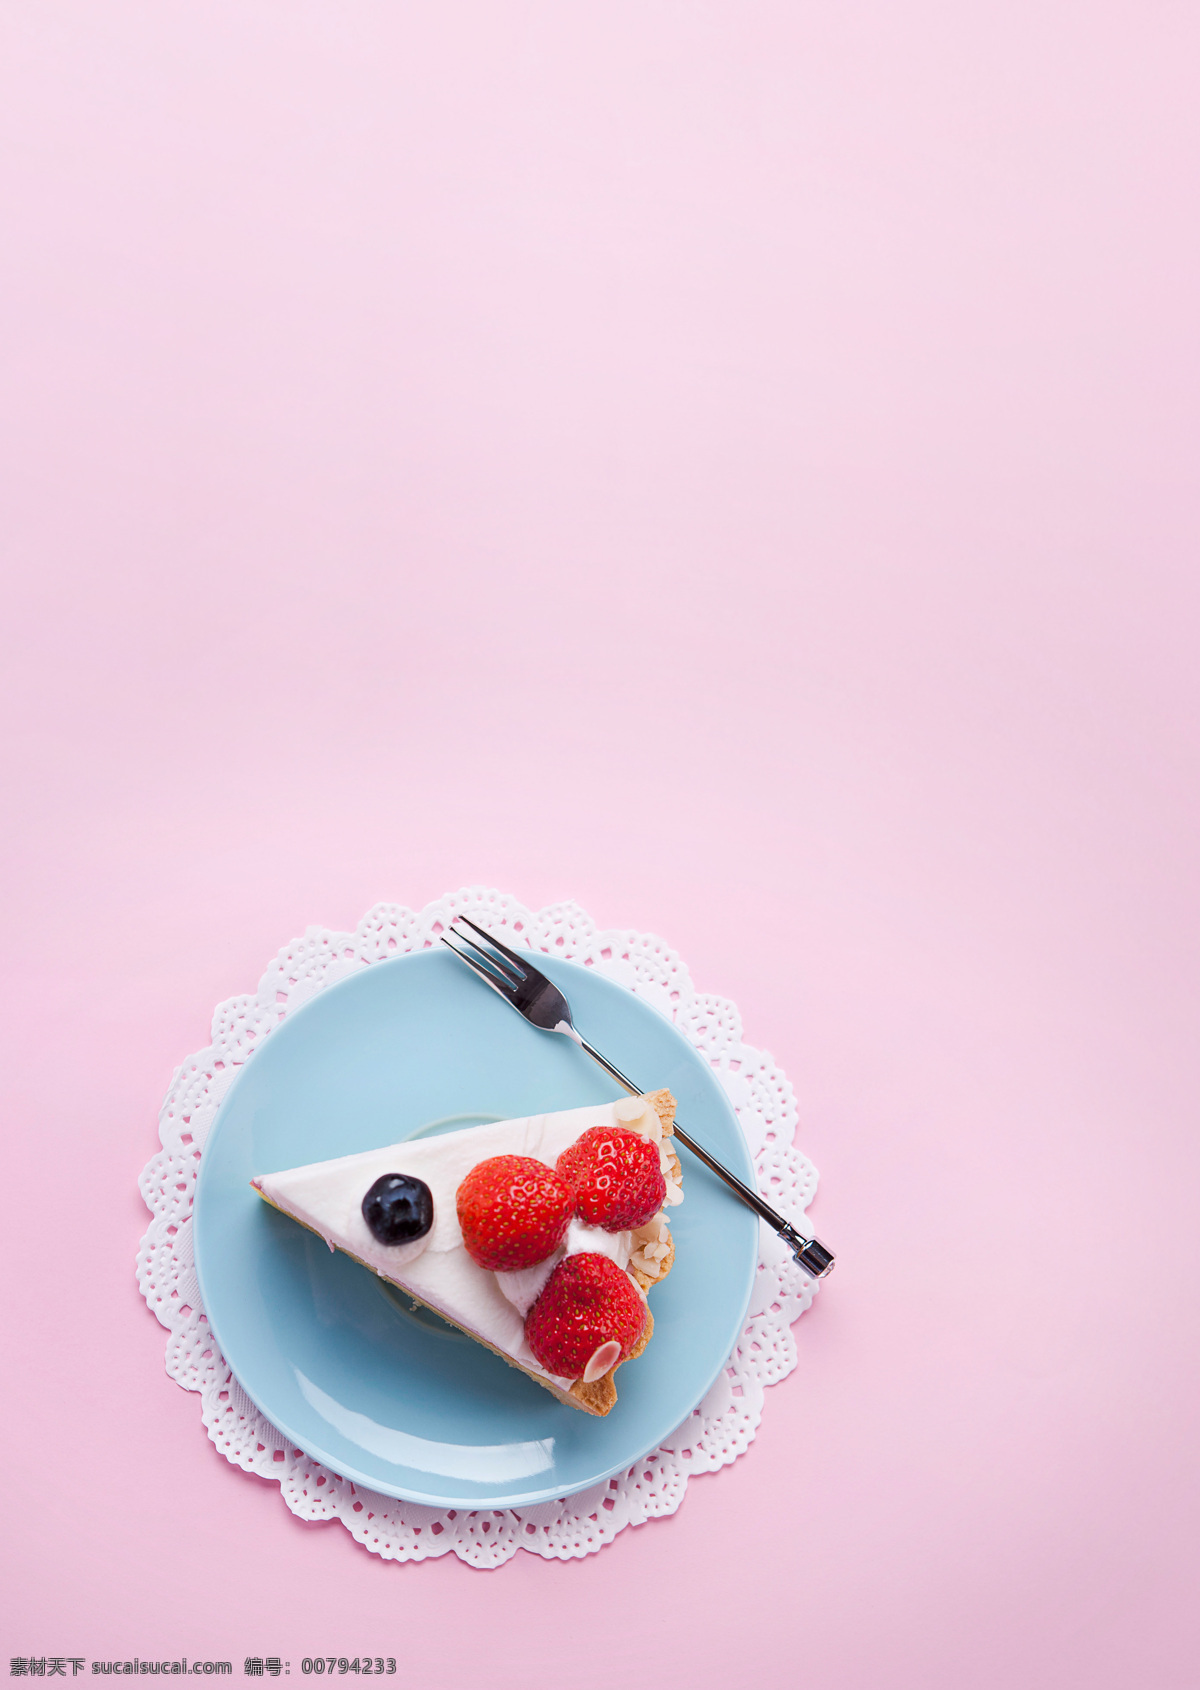 浪漫 小 清新 下午 茶 背景 小清新 蛋糕 草莓 花边 下午茶 点心 叉子 蓝莓 盘子